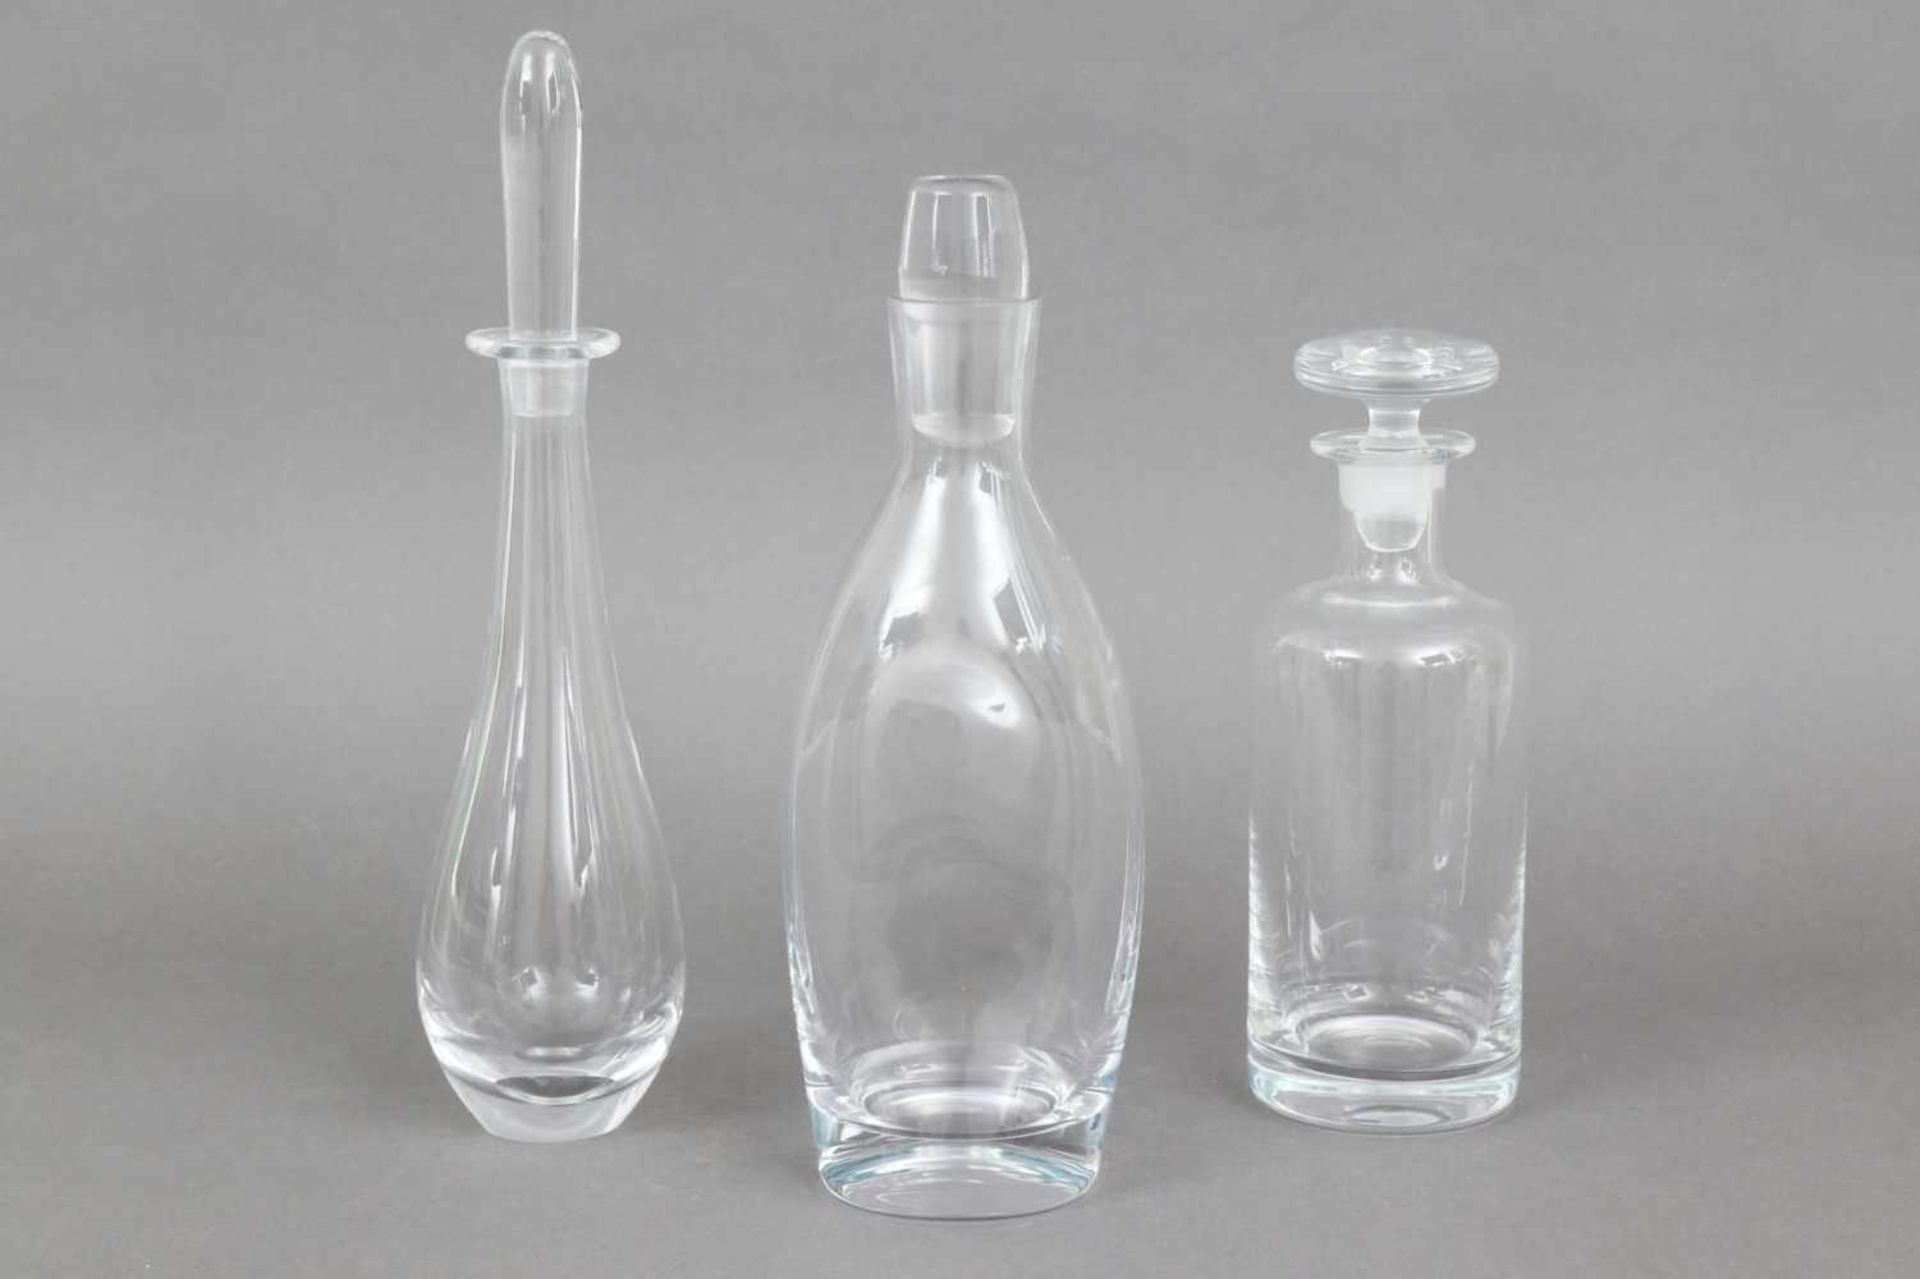 3 Glaskaraffen diverse, farbloses Glas, 1x zylindrisch, 1x keulenförmig, 1x kegelförmig, H ca. 25-